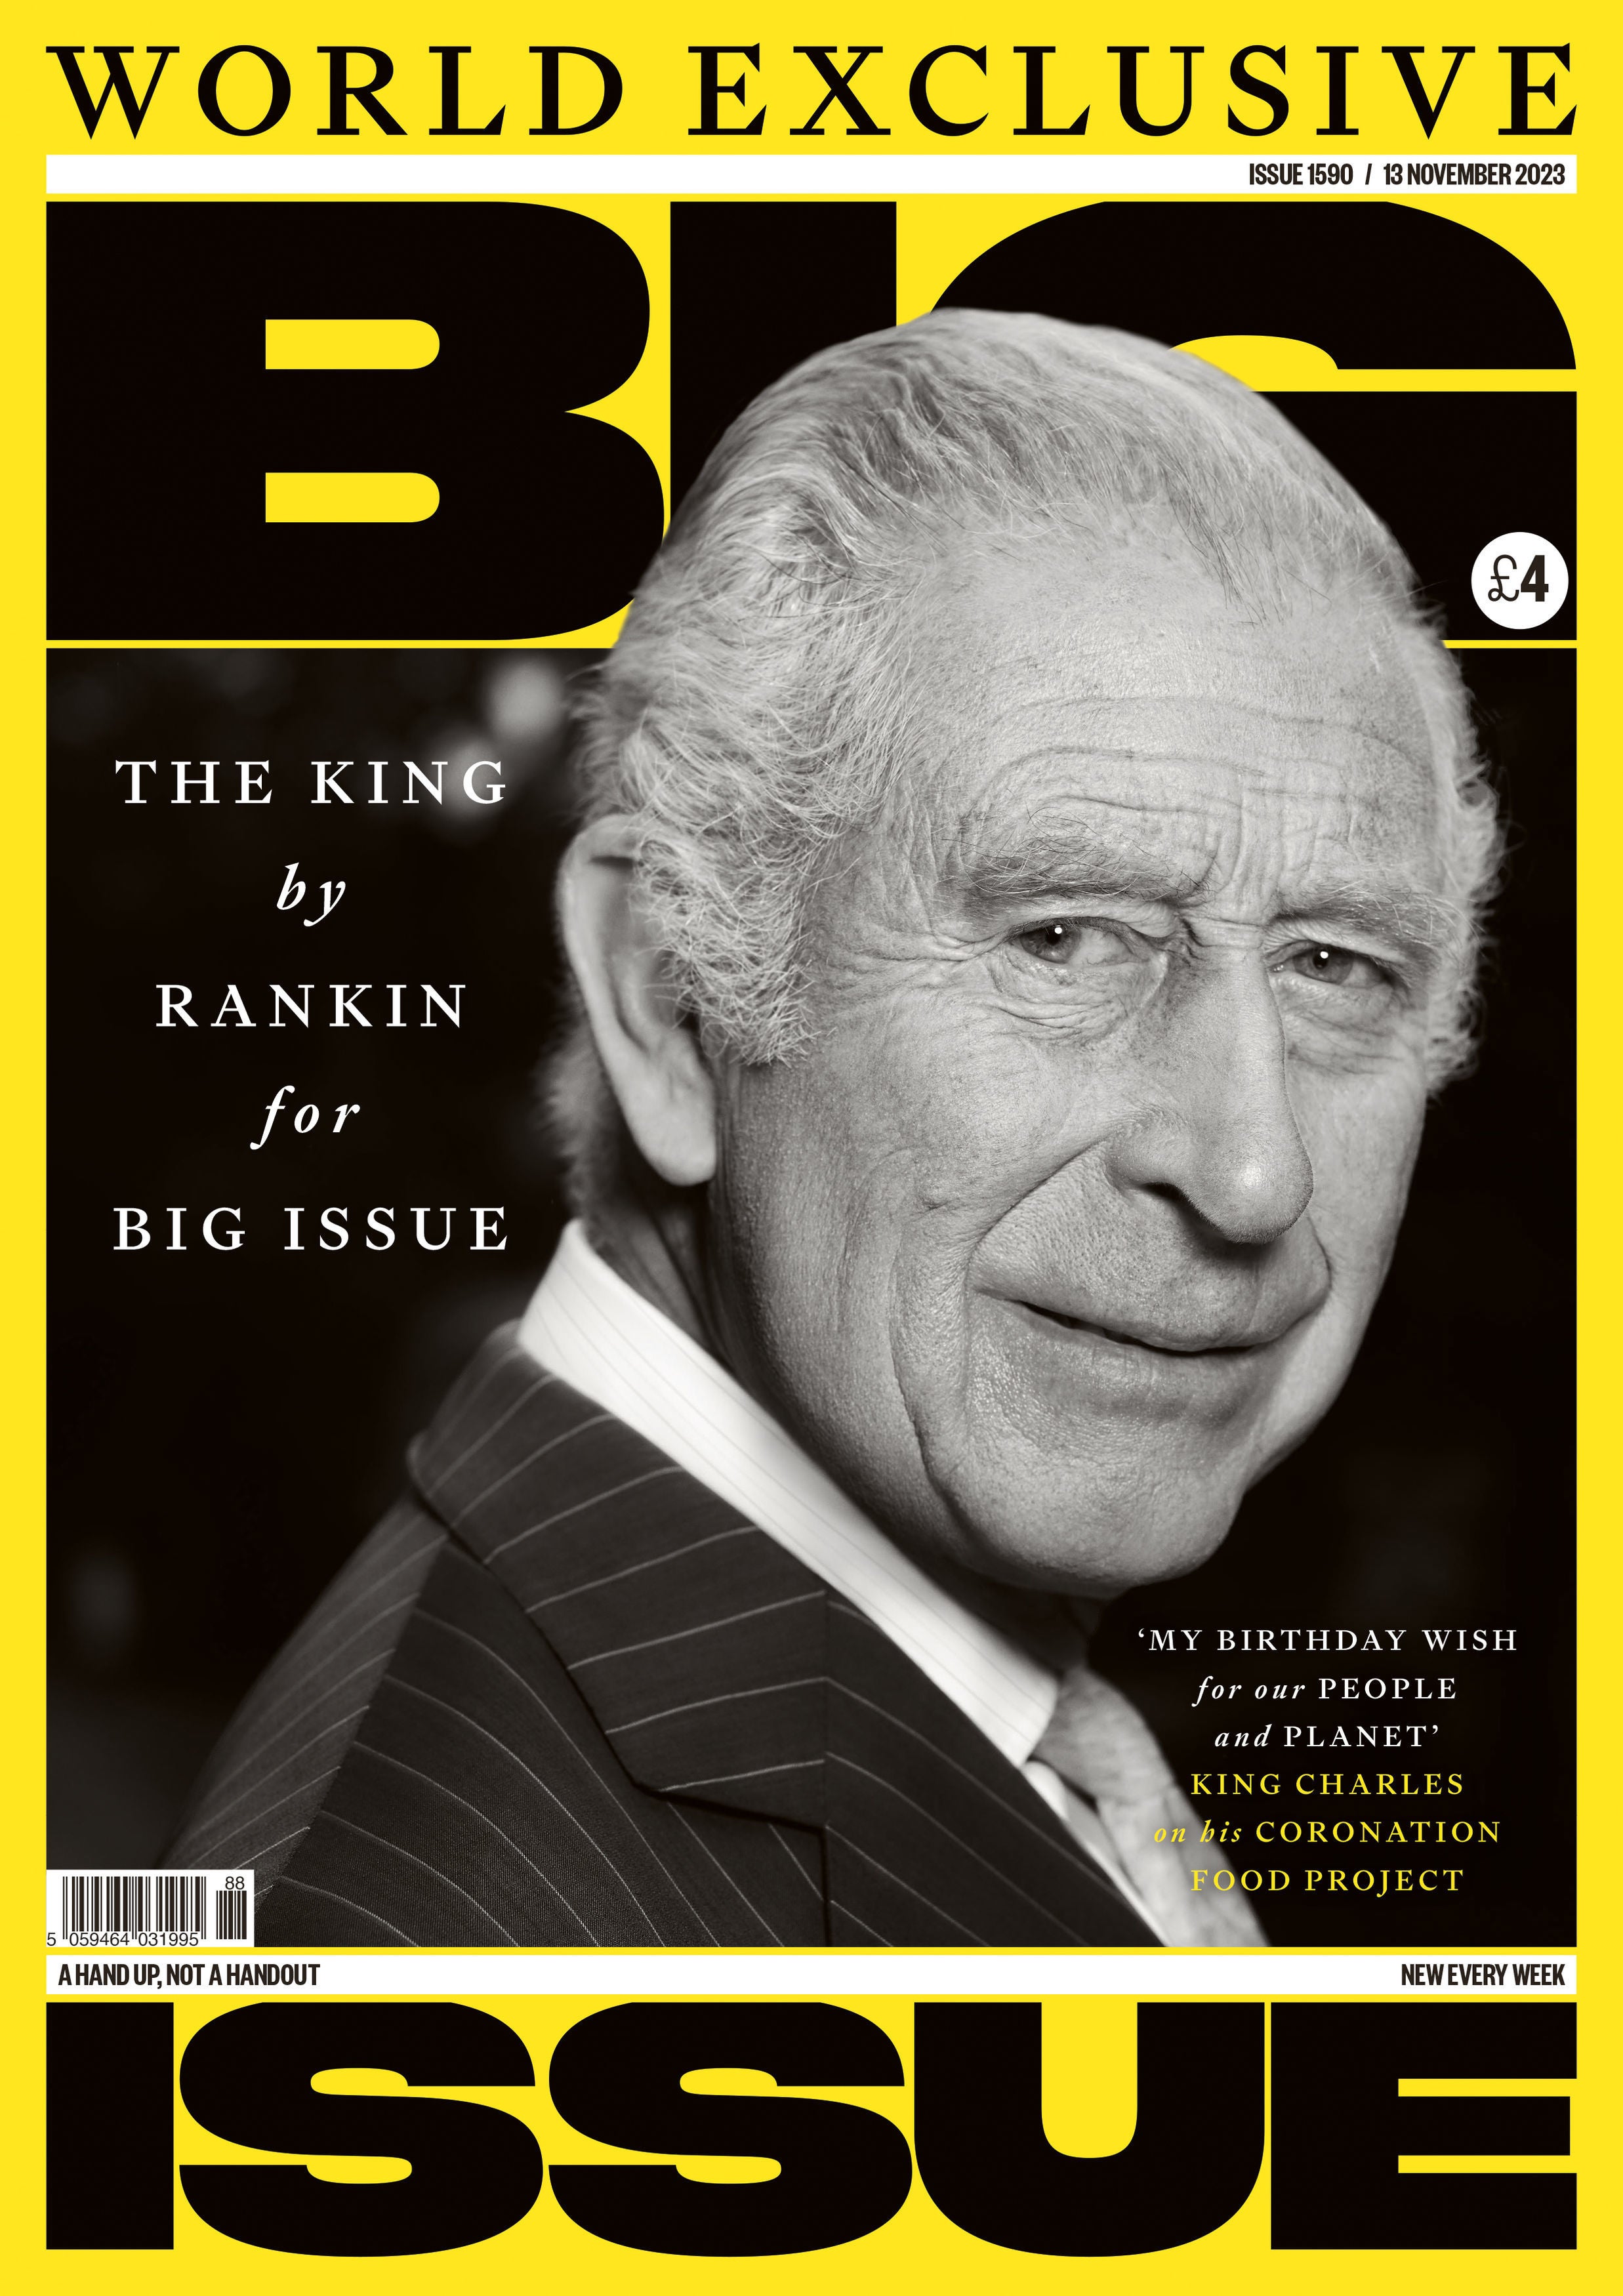 King Charles turns 75 on November 14